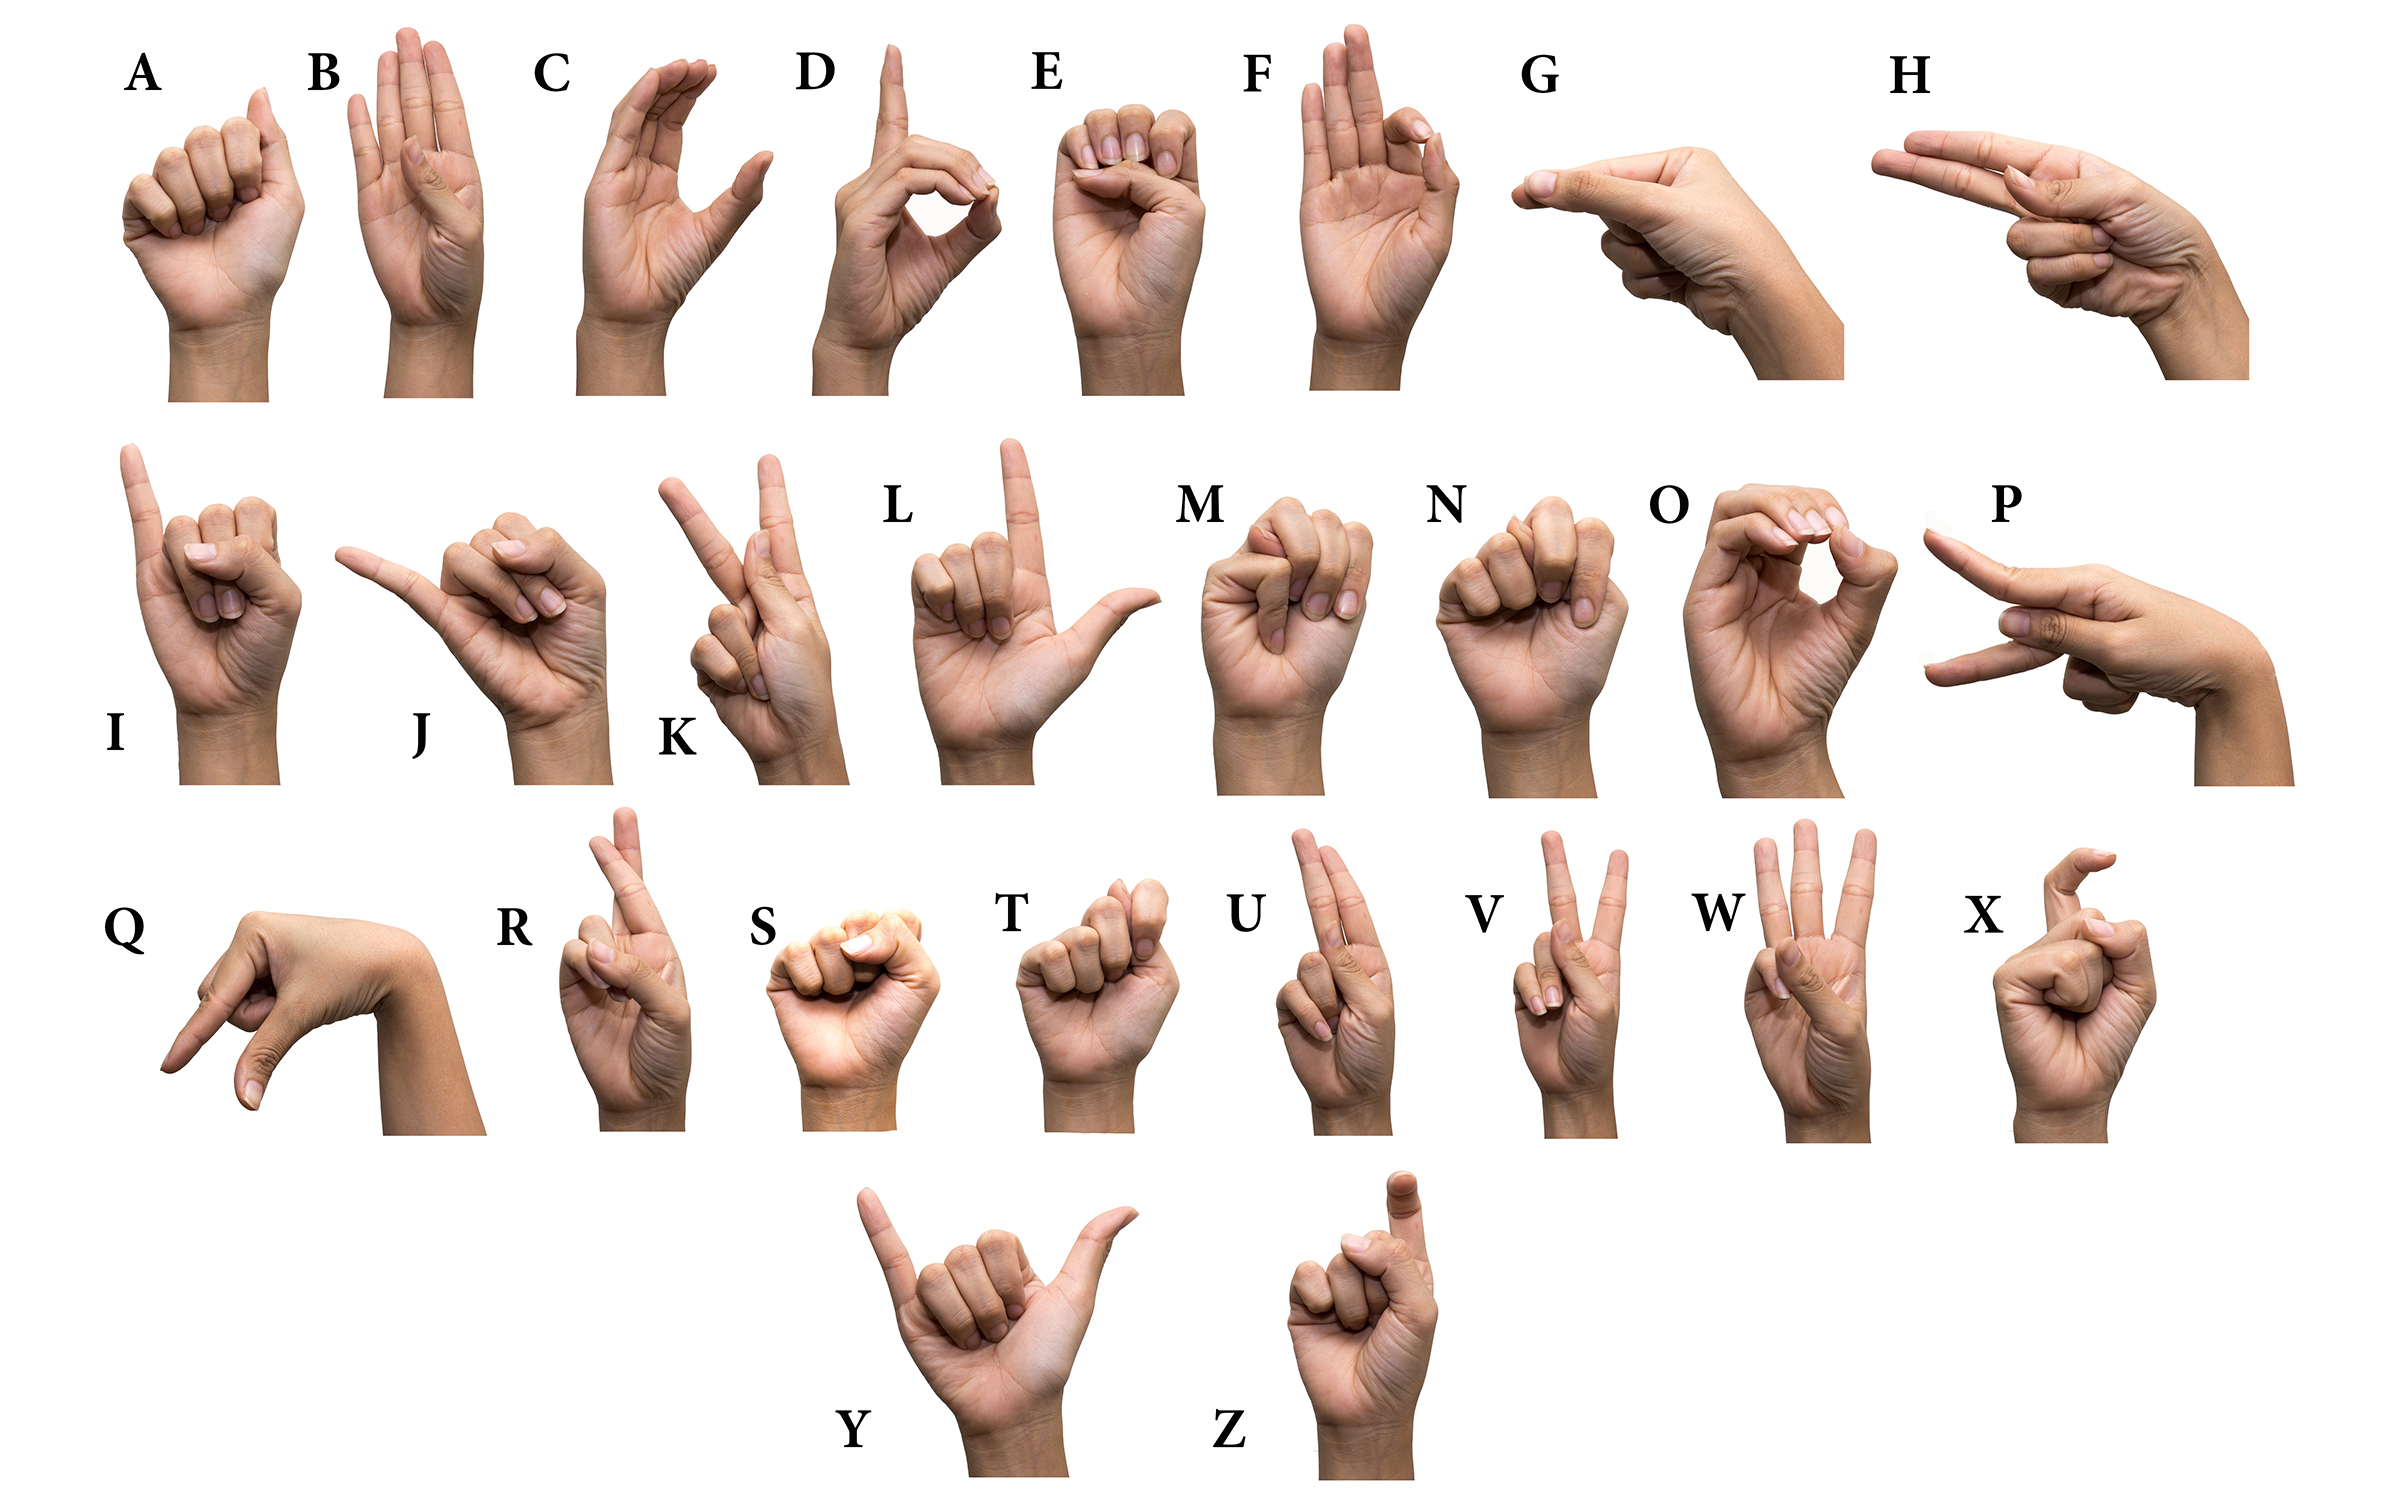 Глухой на английском. Американский дактильный алфавит. Язык жестов. Язык жестов английский. Азбука для глухонемых на пальцах.